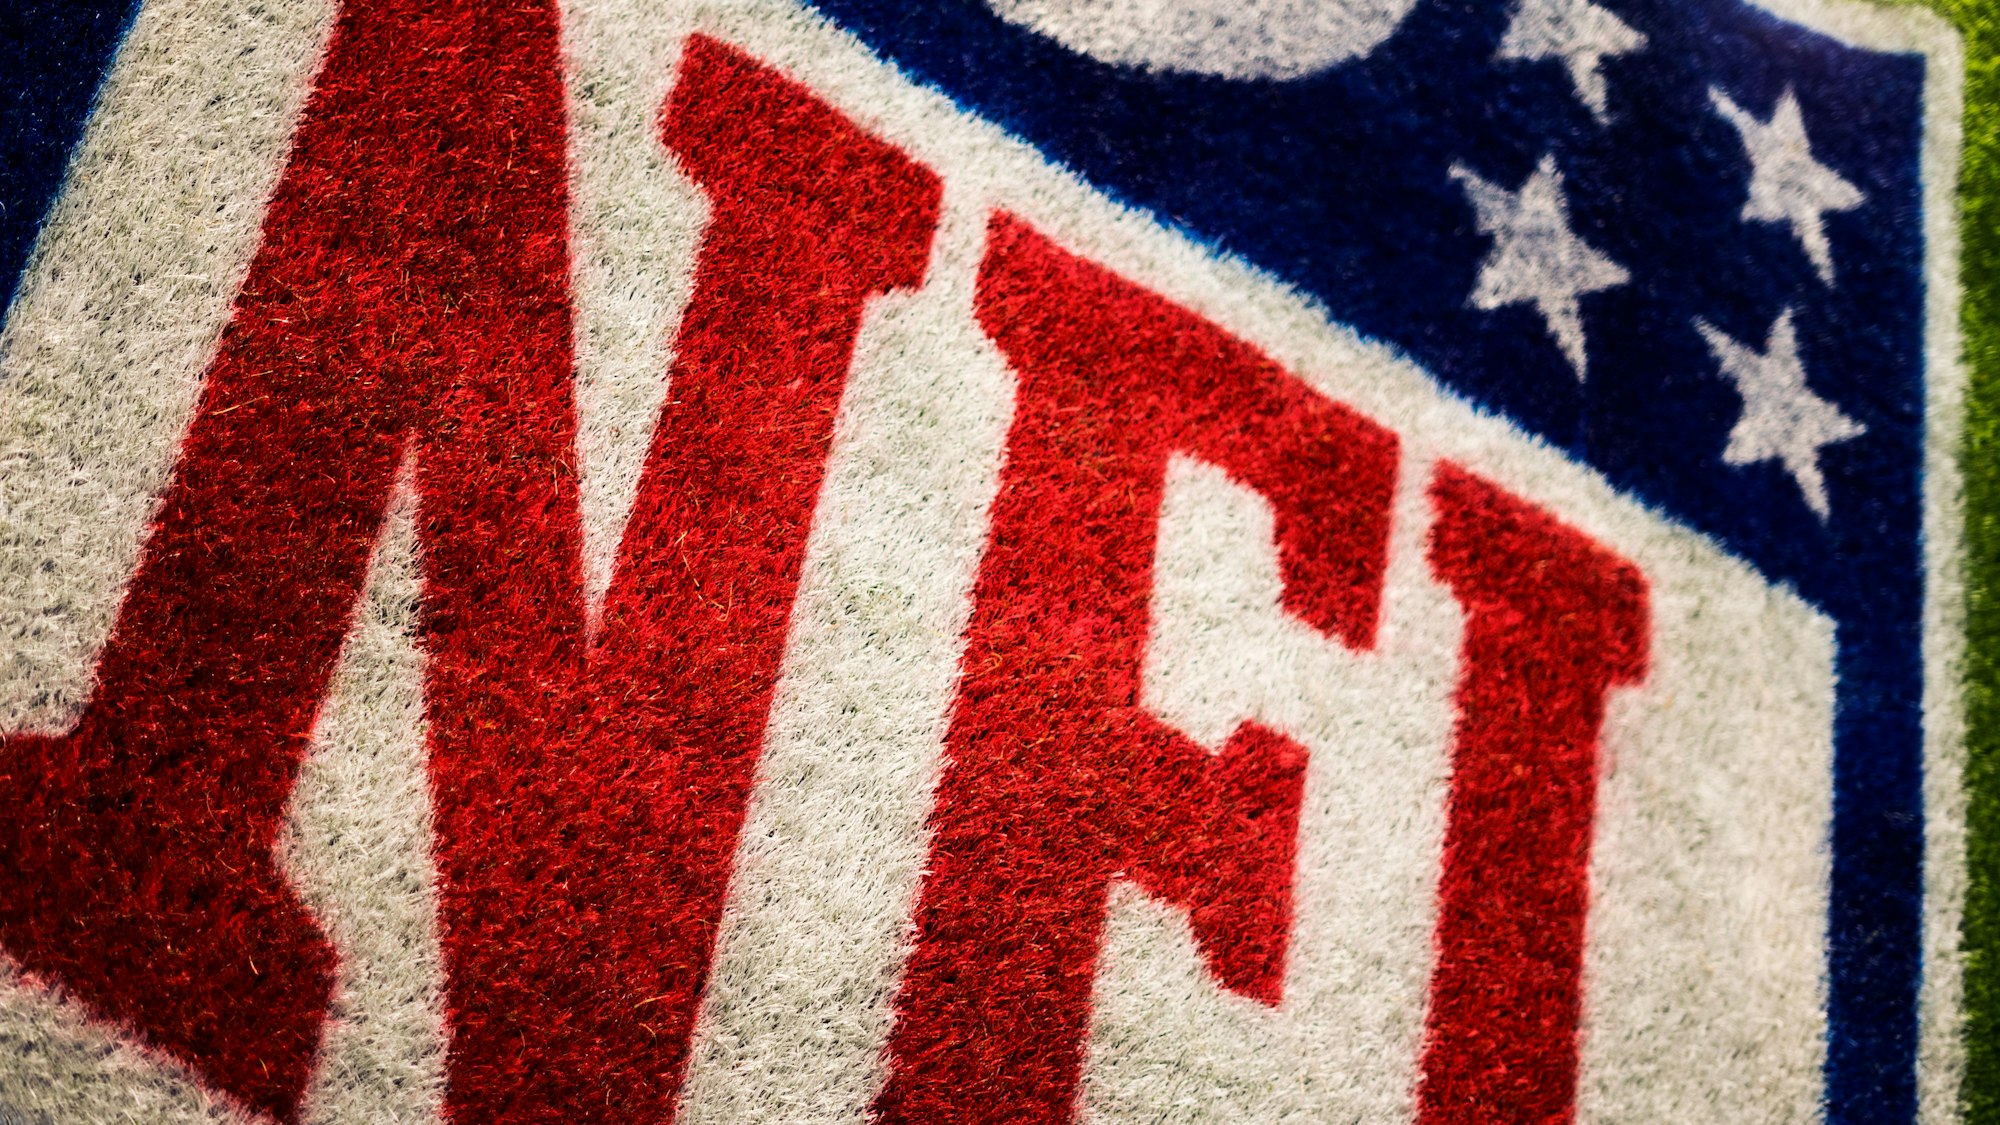 Cacau Show e NFL fecham acordo de licenciamento